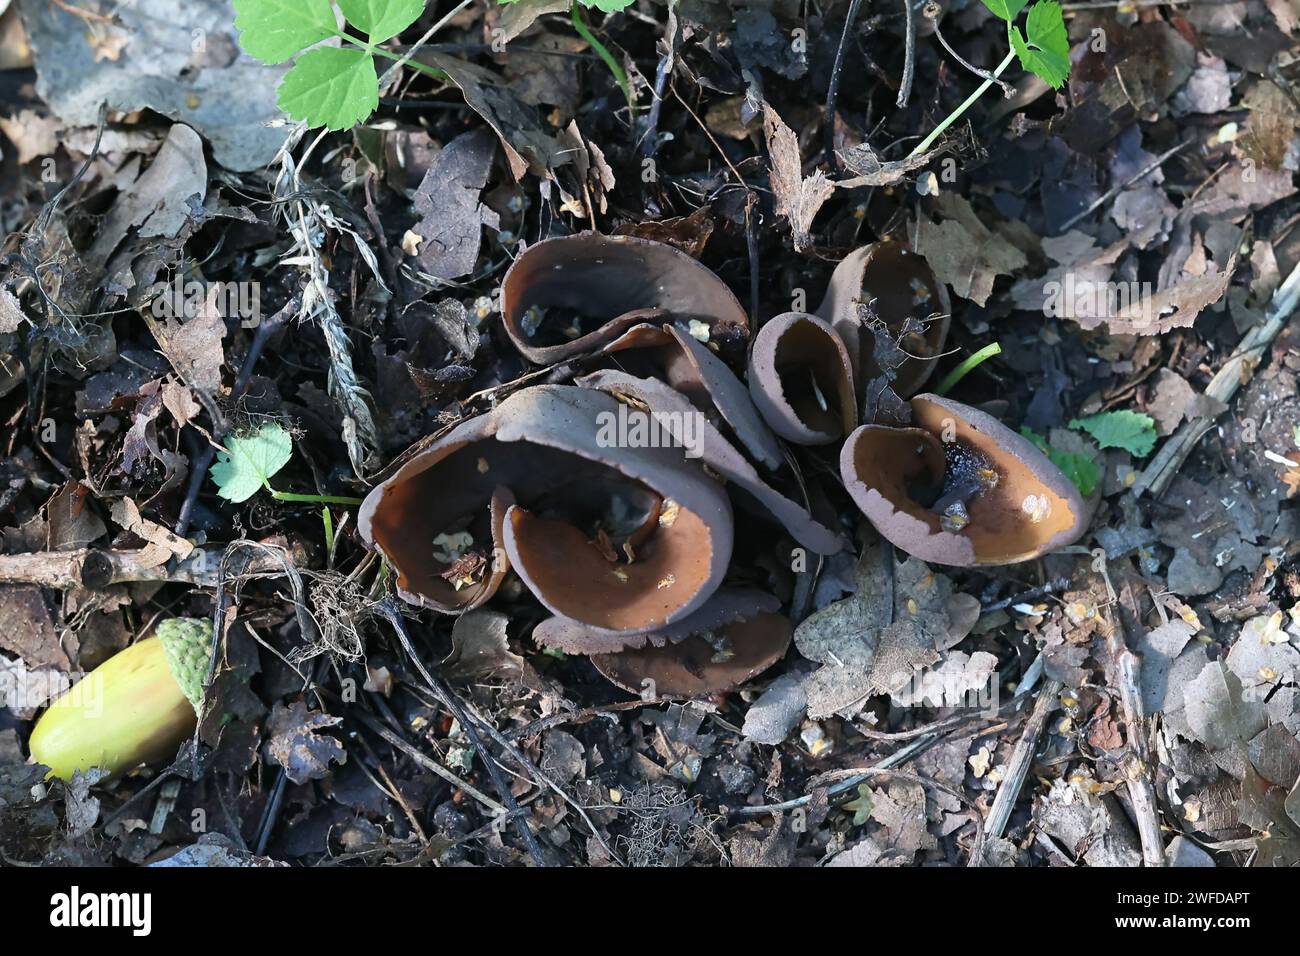 Otidea bufonia, connue sous le nom de goblet fendu ou de champignon de la coupe d'oreille de lapin, champignon sauvage de Finlande Banque D'Images